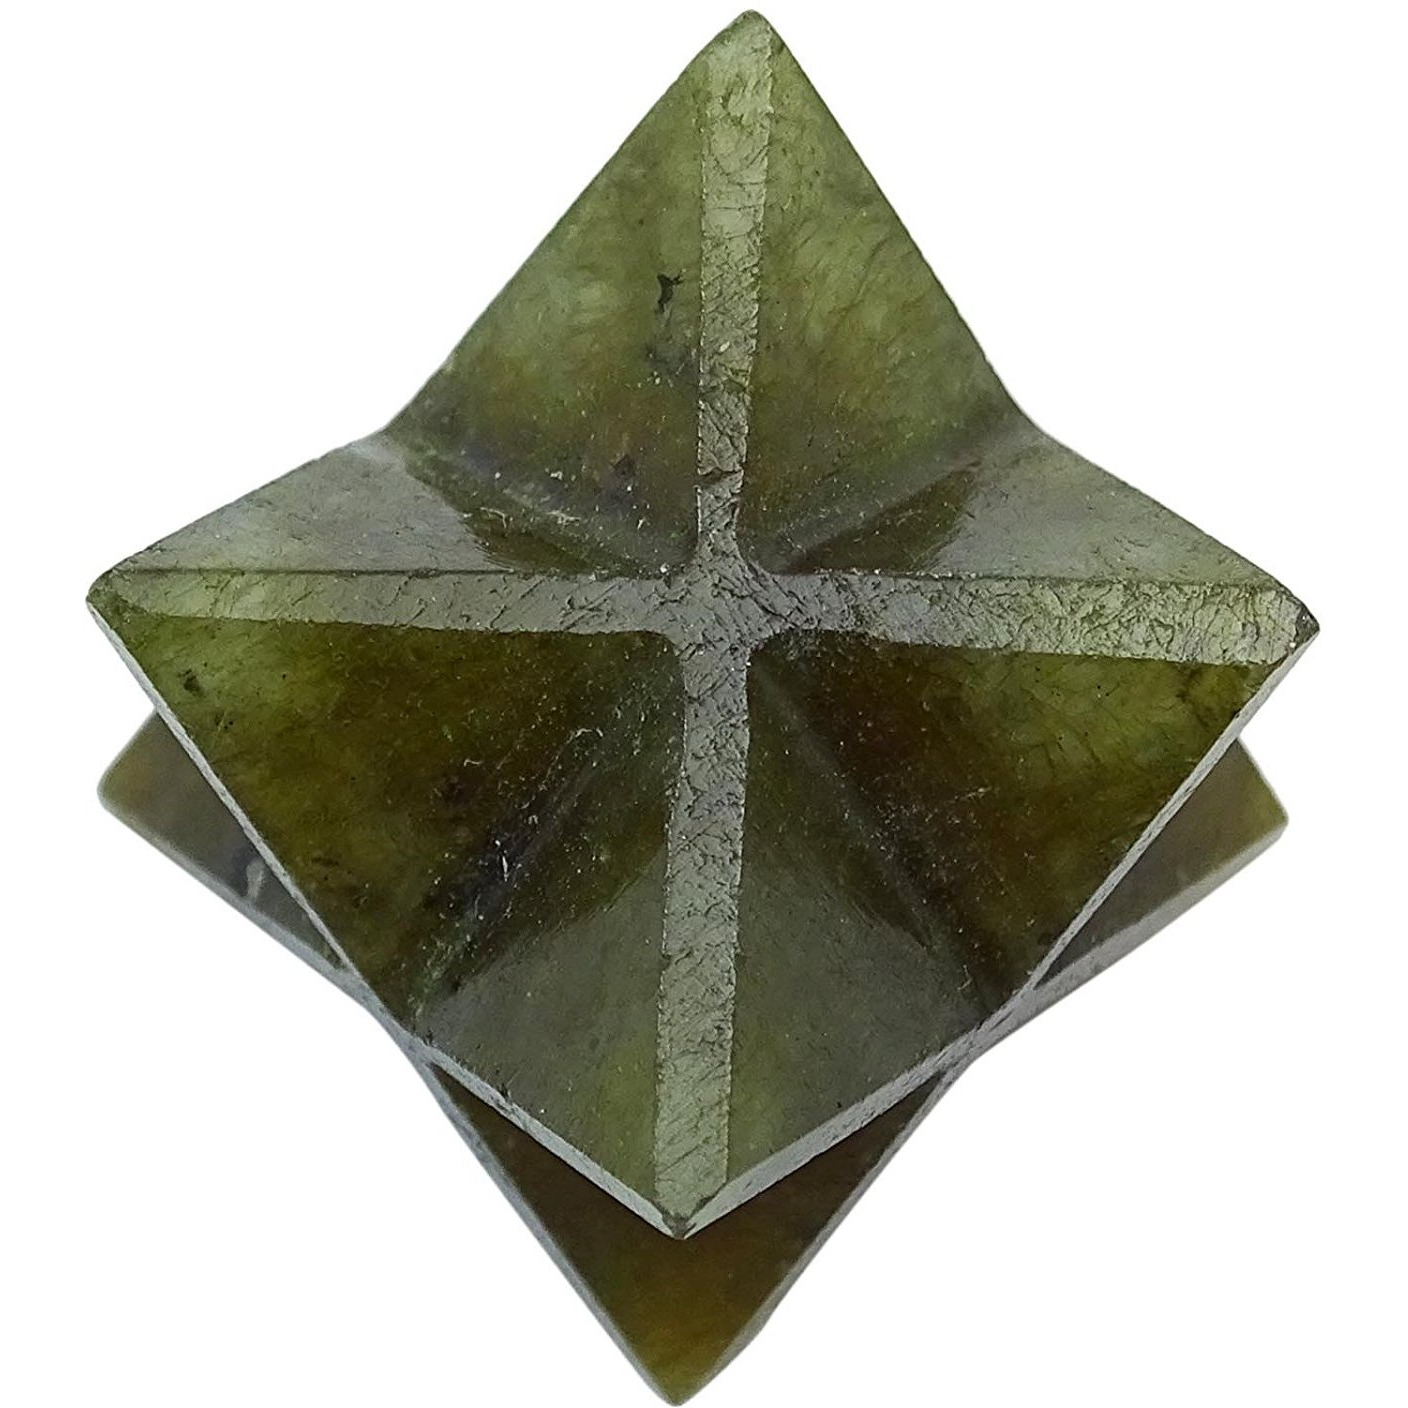 Winmaarc Reiki Healing Crystal Energy Generator 8 Point Star Merkaba Sacred Geometry